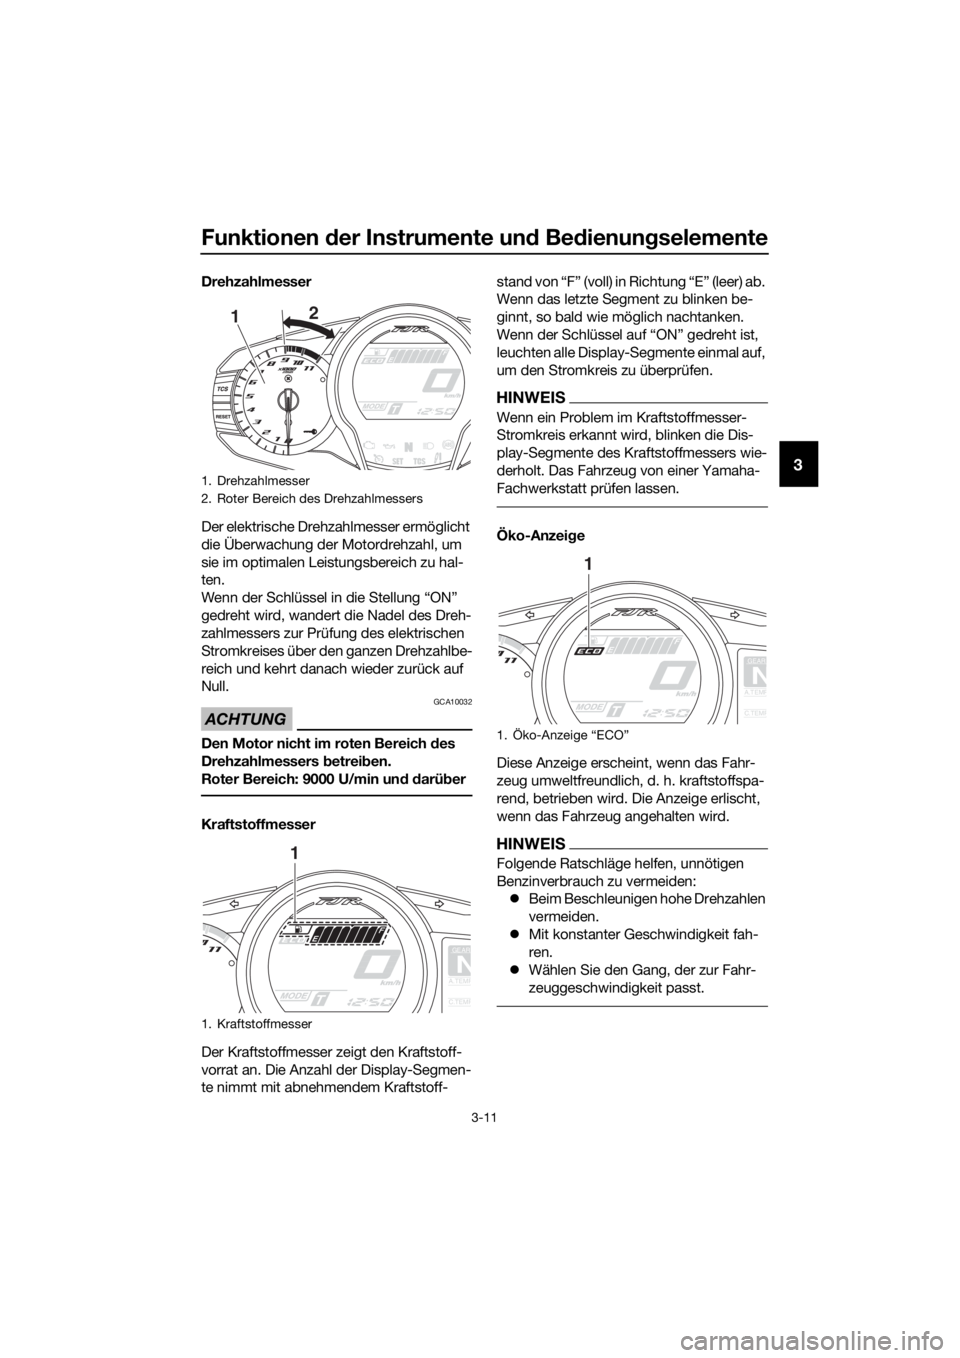 YAMAHA FJR1300AE 2016  Betriebsanleitungen (in German) Funktionen der Instrumente un d Bed ienung selemente
3-11
3
Drehzahlmesser
Der elektrische Drehzahlmesser ermöglicht 
die Überwachung der Motordrehzahl, um 
sie im optimalen Leistungsbereich zu hal-